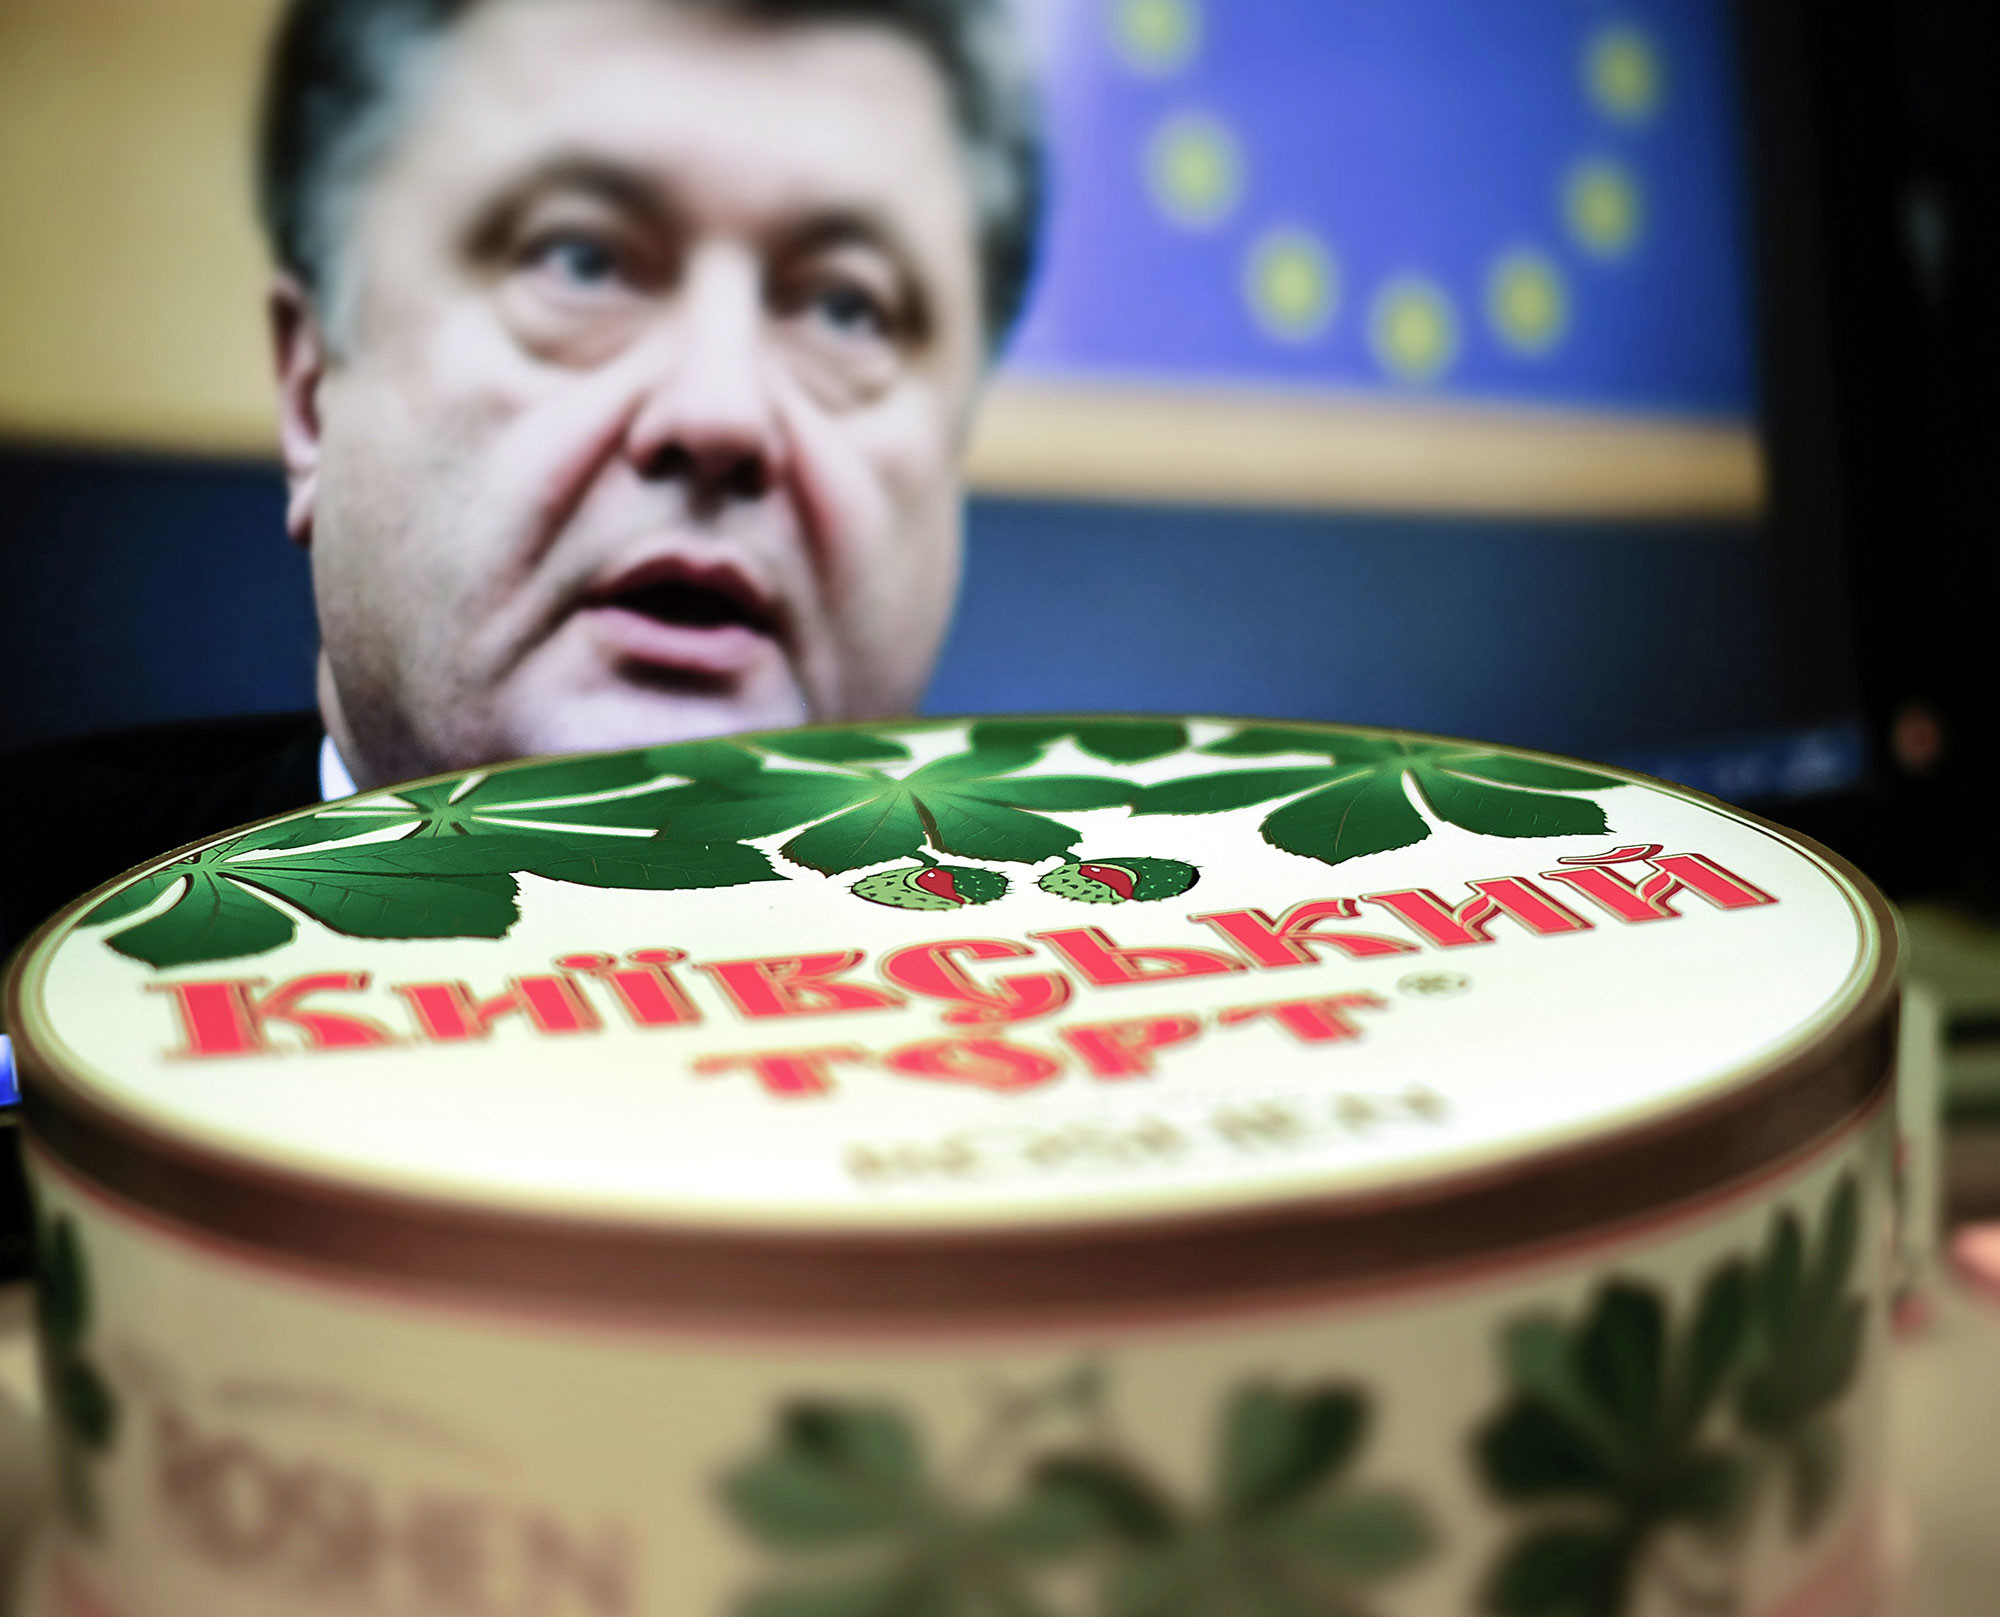 Киевский торт украинской кондитерской корпорации "Рошен" (Roshen). Фото: © РИА Новости / Александр Вильф